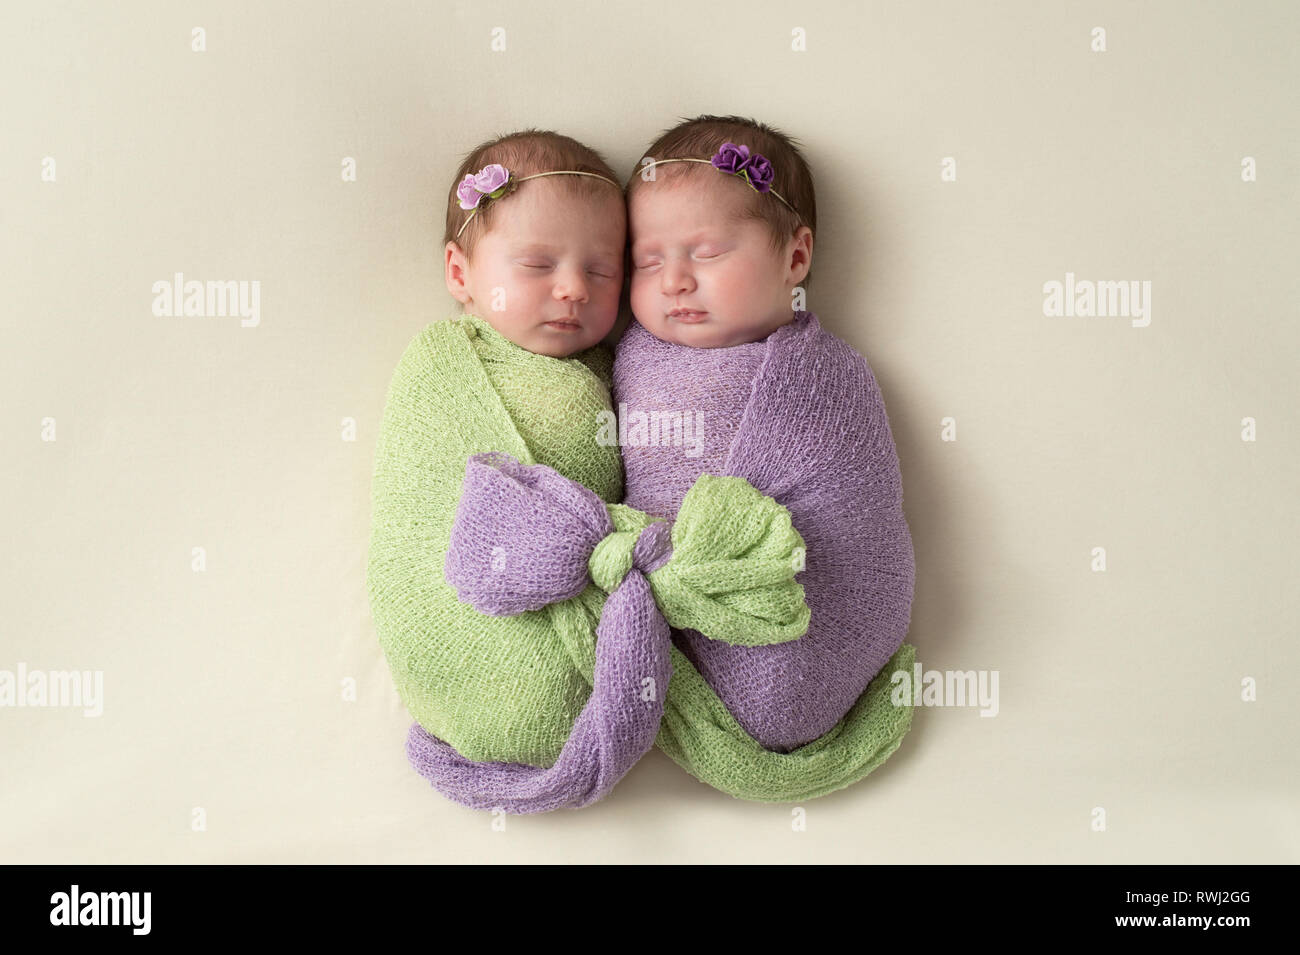 Twin fraterna neonato ragazze swaddled insieme alla luce verde e lavanda tratto di materiale di avvolgimento. Foto Stock